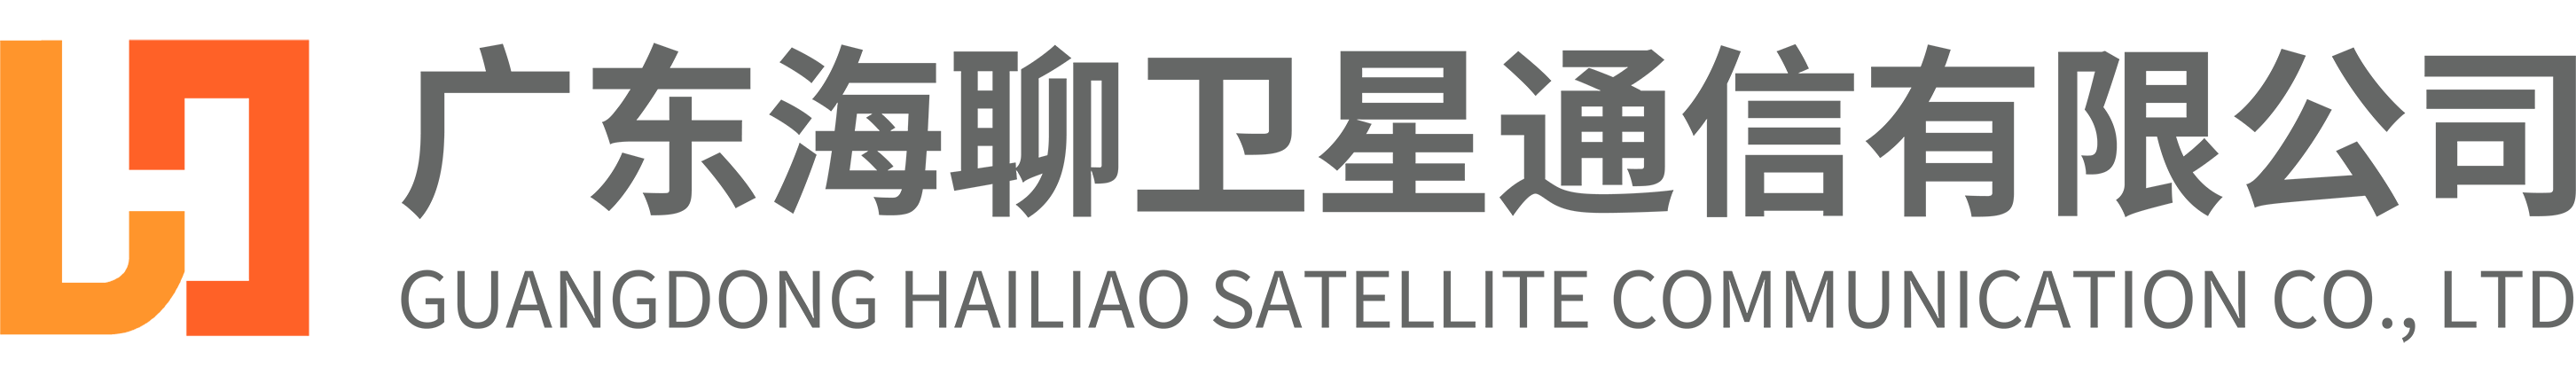 广东海聊卫星通信有限公司——北斗短报文解决方案提供商